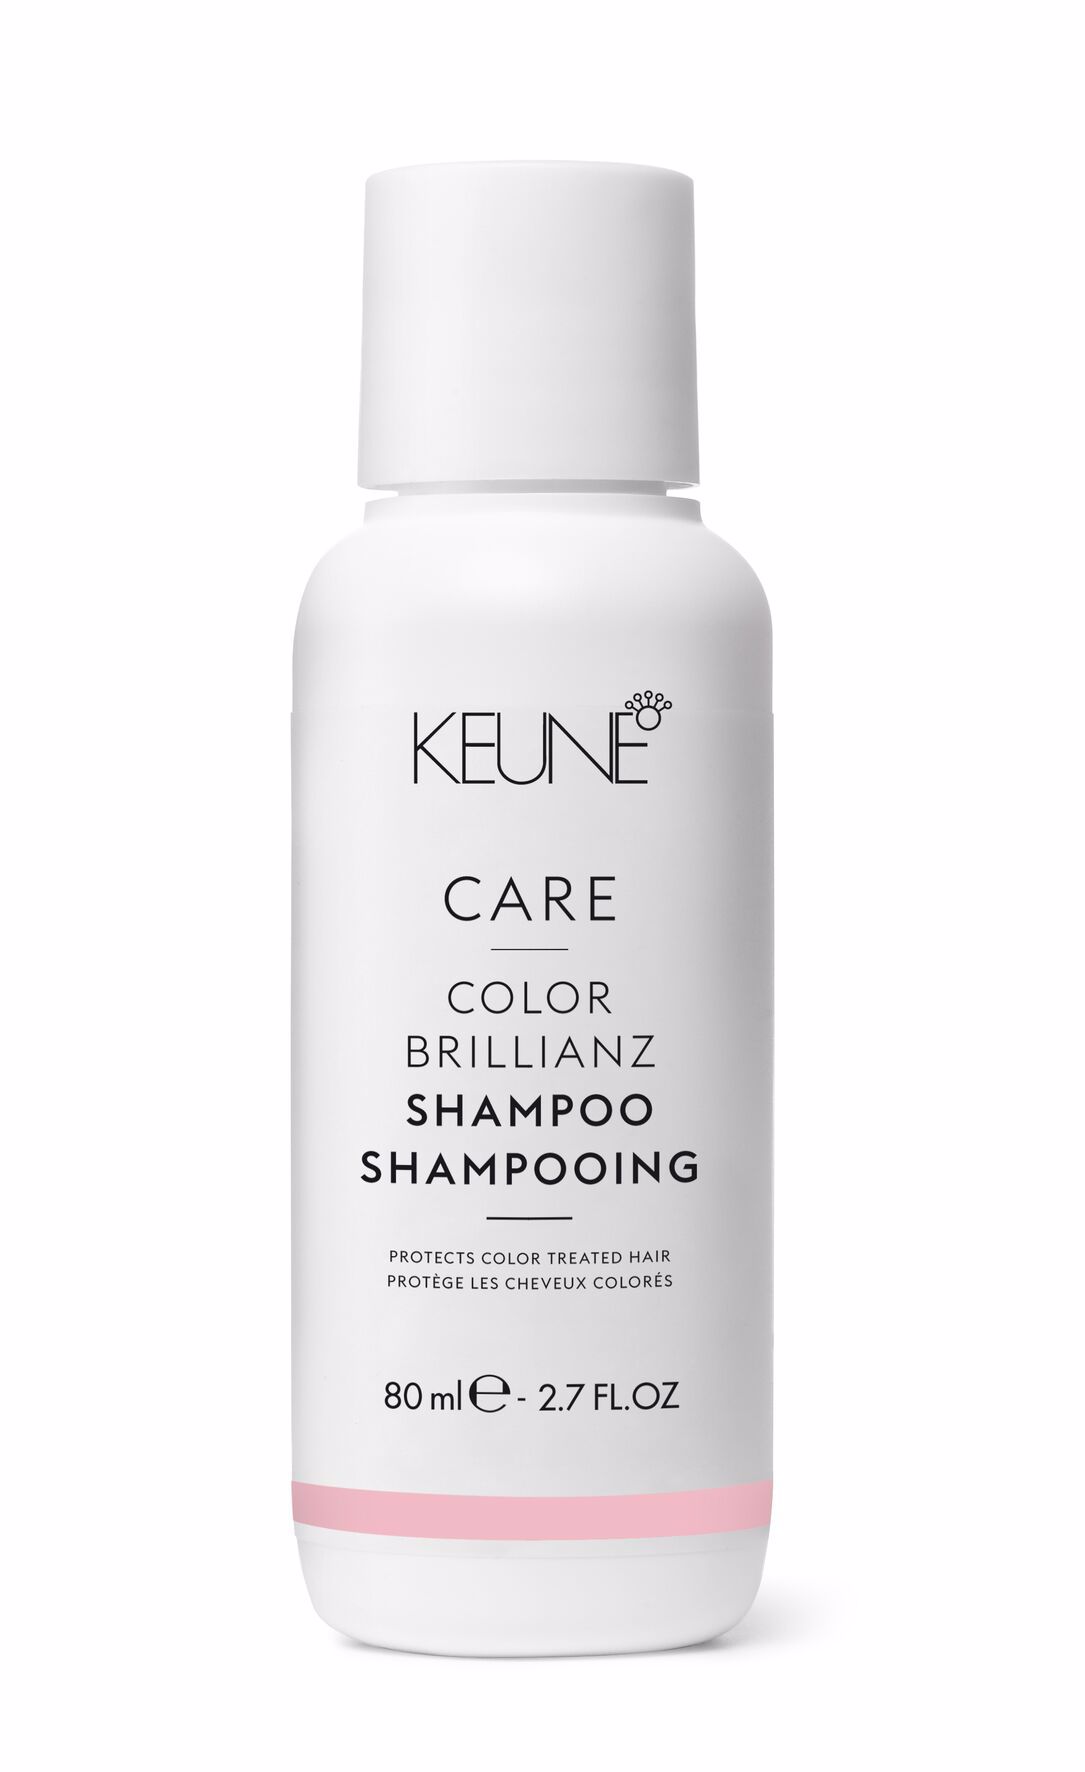 CARE Color Brillianz Shampoo